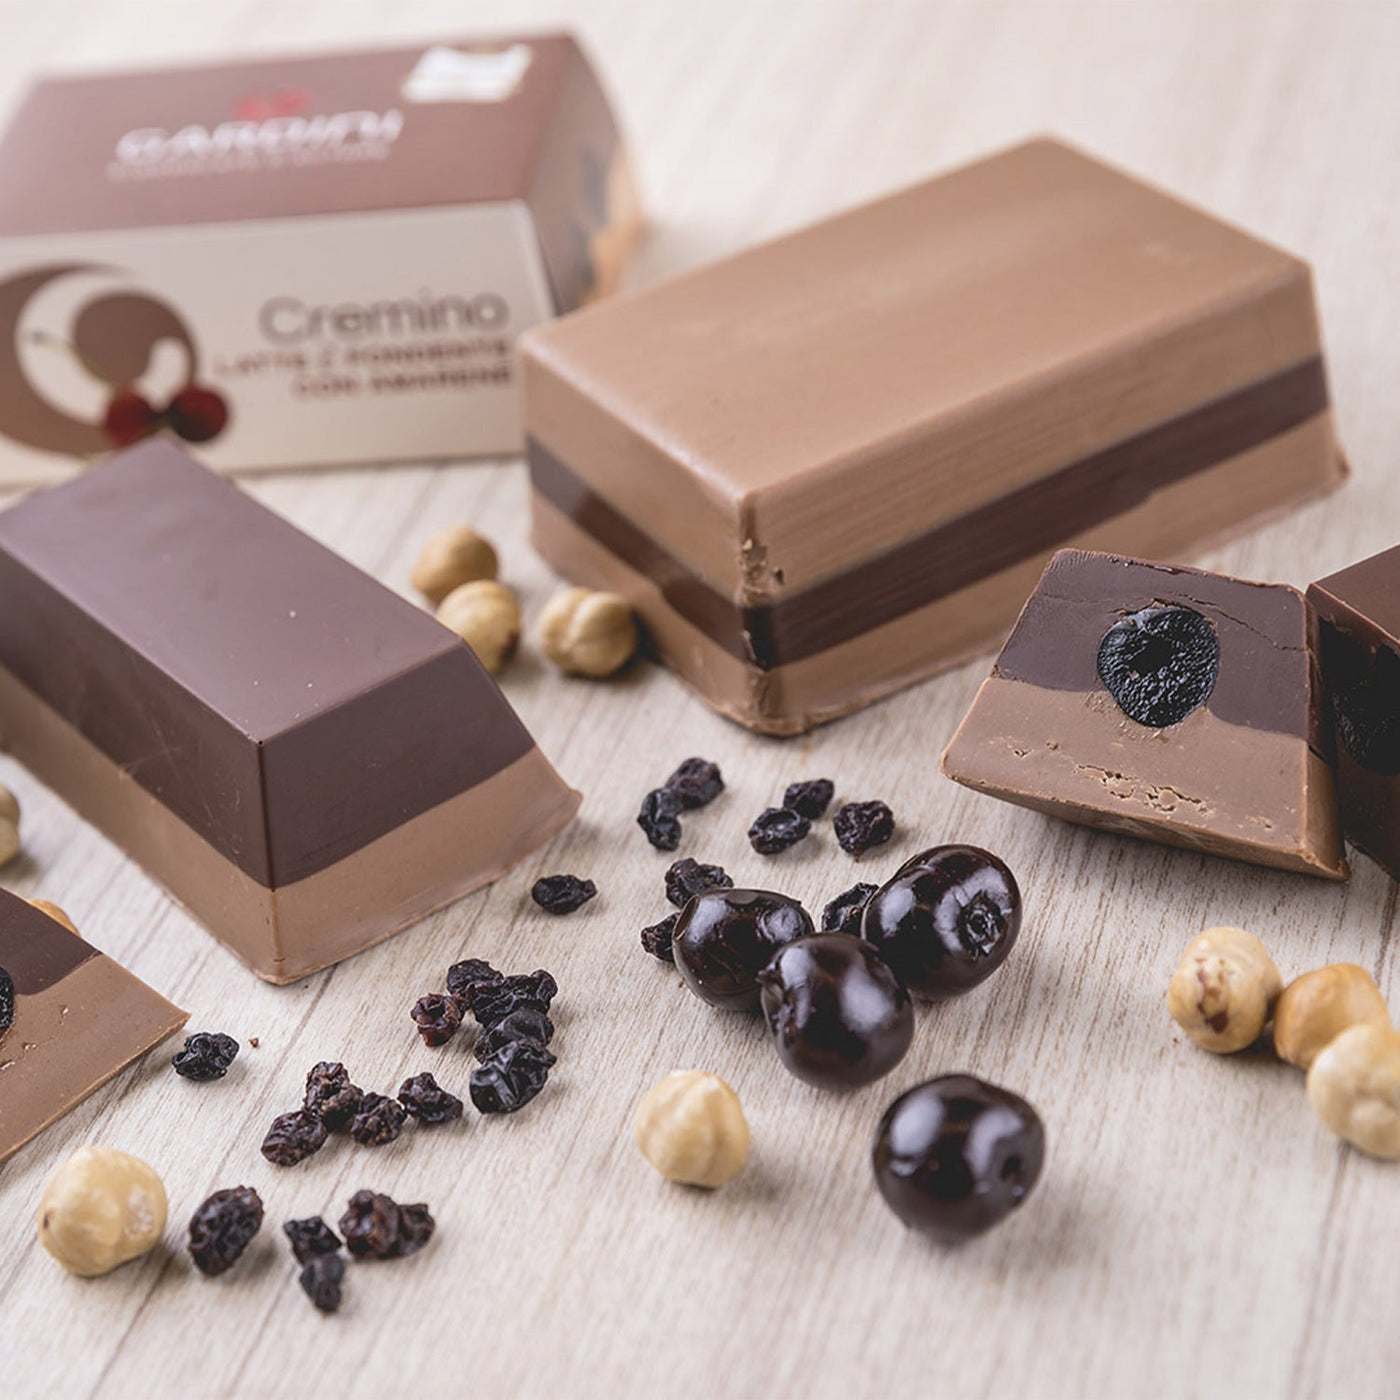 Pistachio Cremino Chocolate